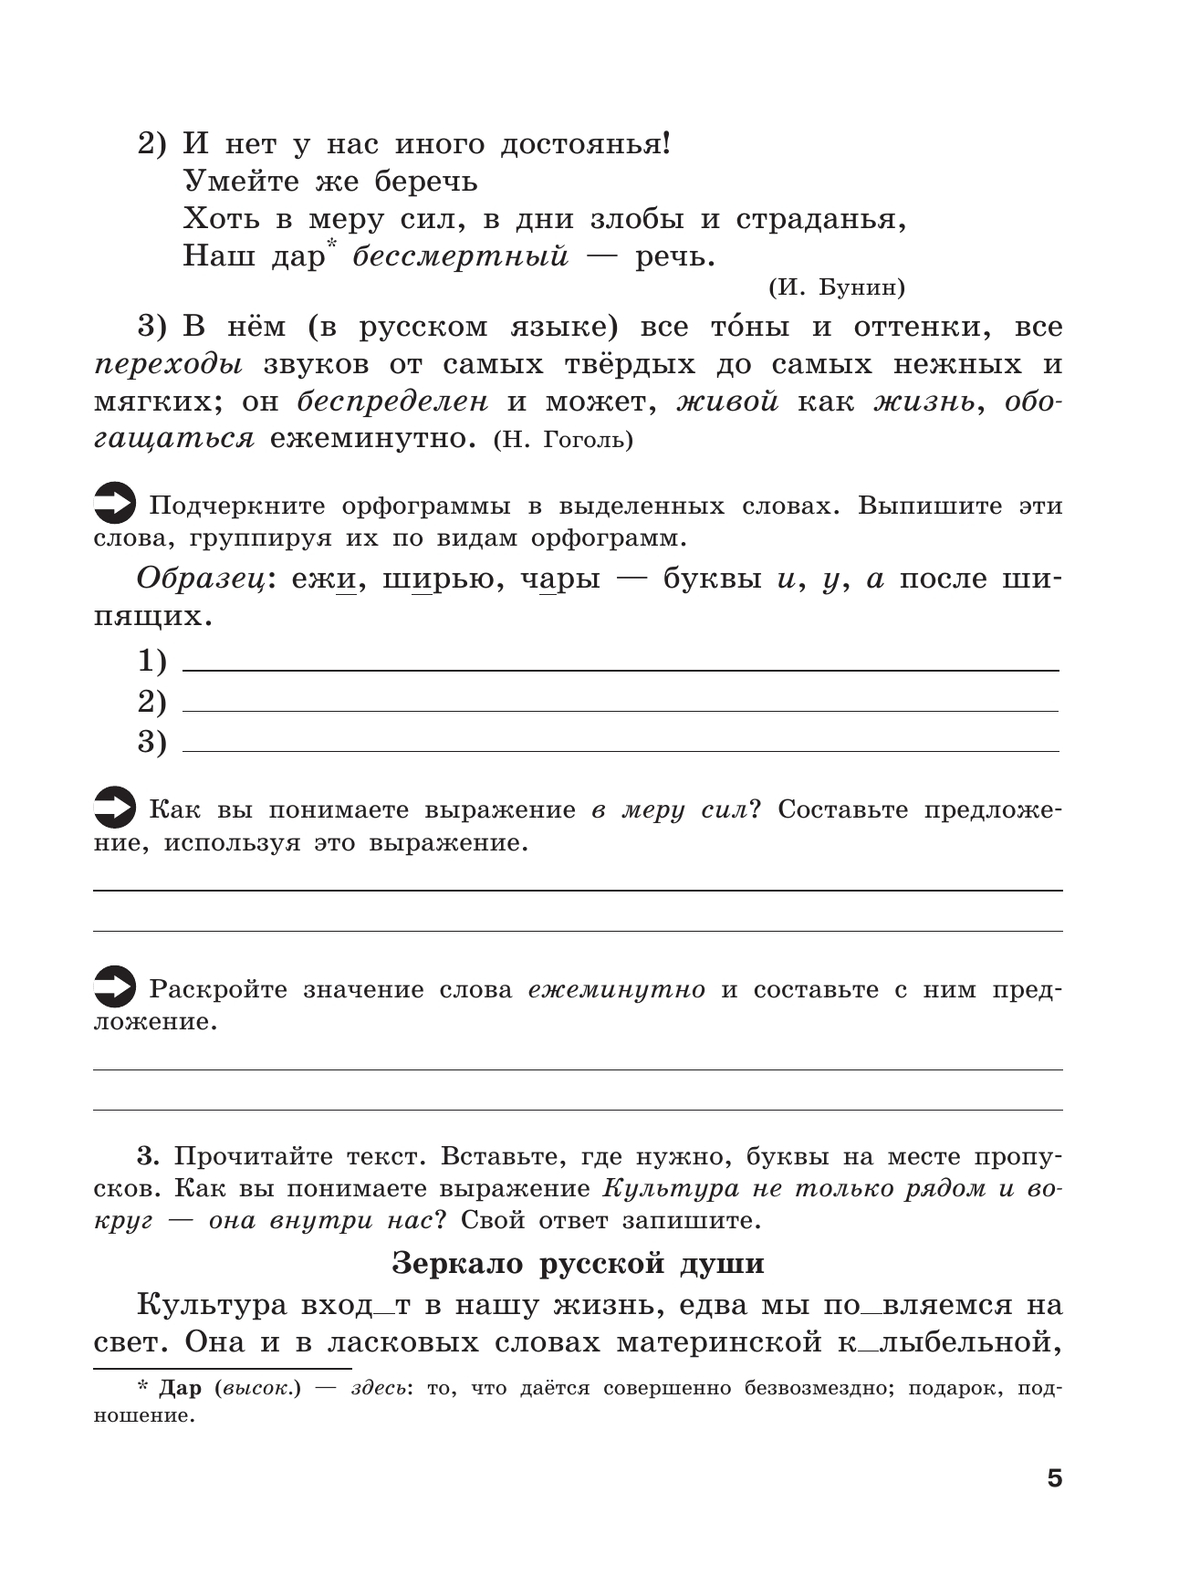 Скорая помощь по русскому языку. Рабочая тетрадь. 8 класс. В 2 ч. Часть 1 6